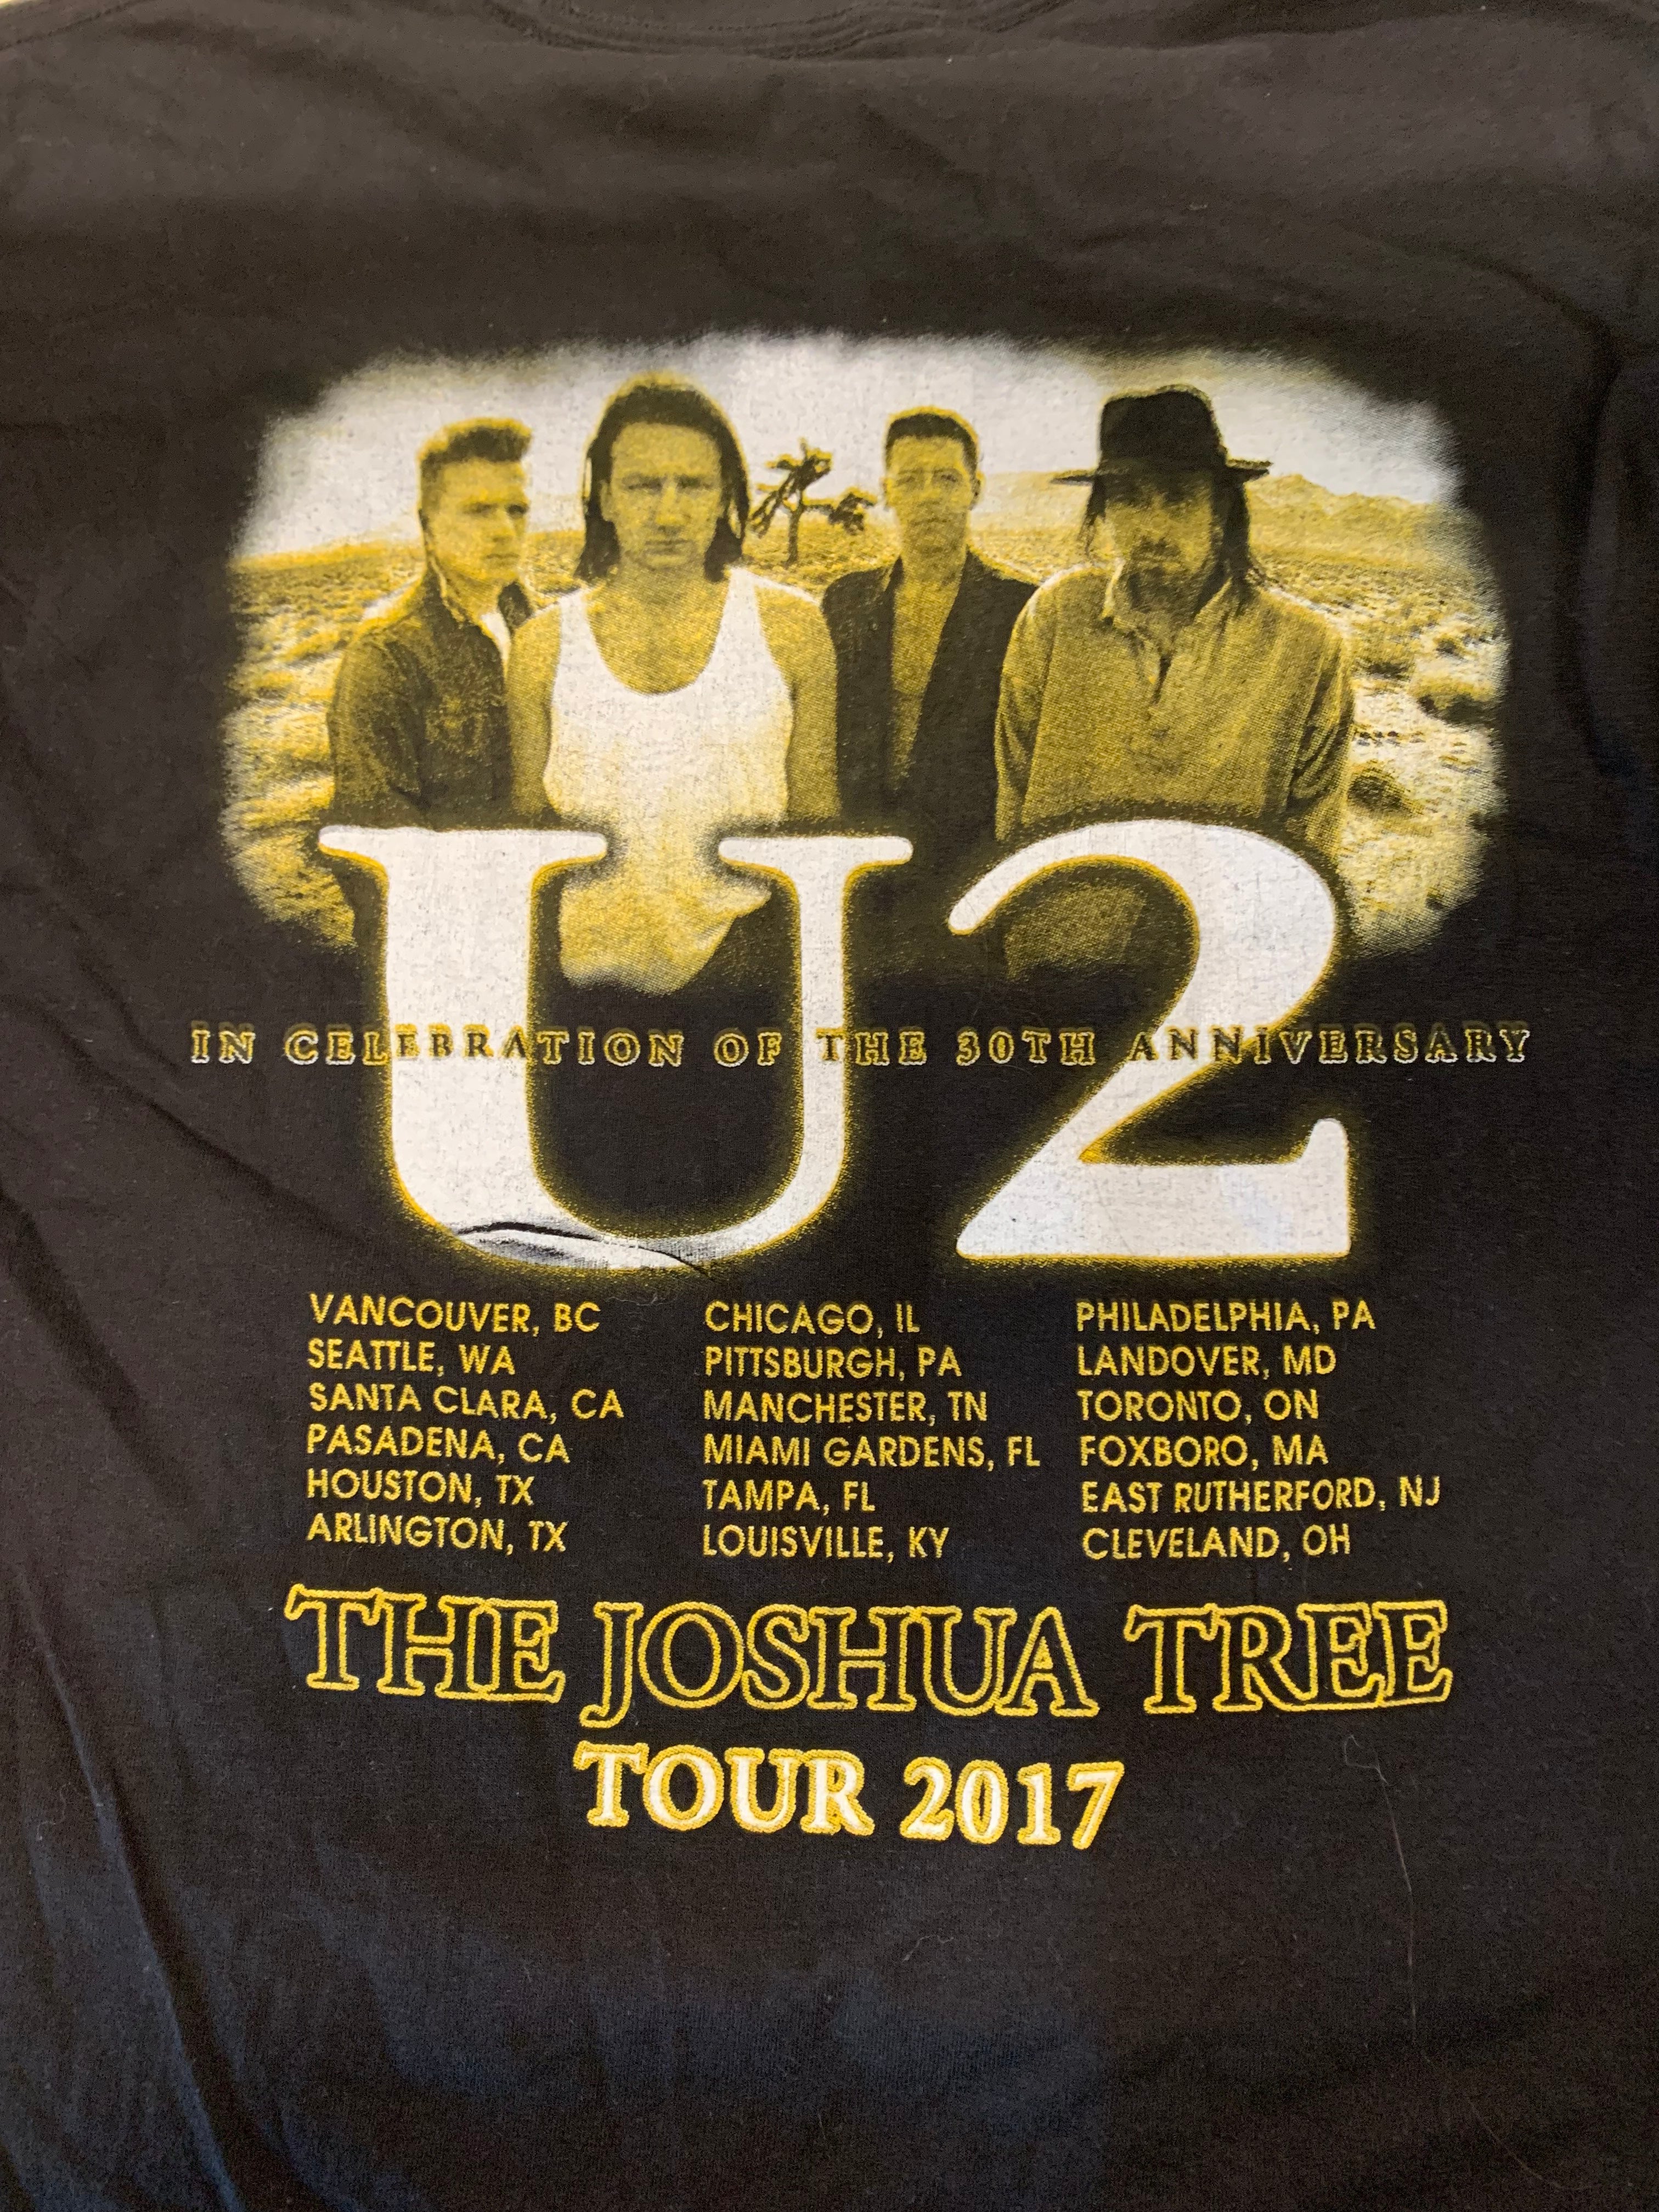 U2 2017 Joshua Tree 30th Anniversary Tour T-Shirt, Black, M